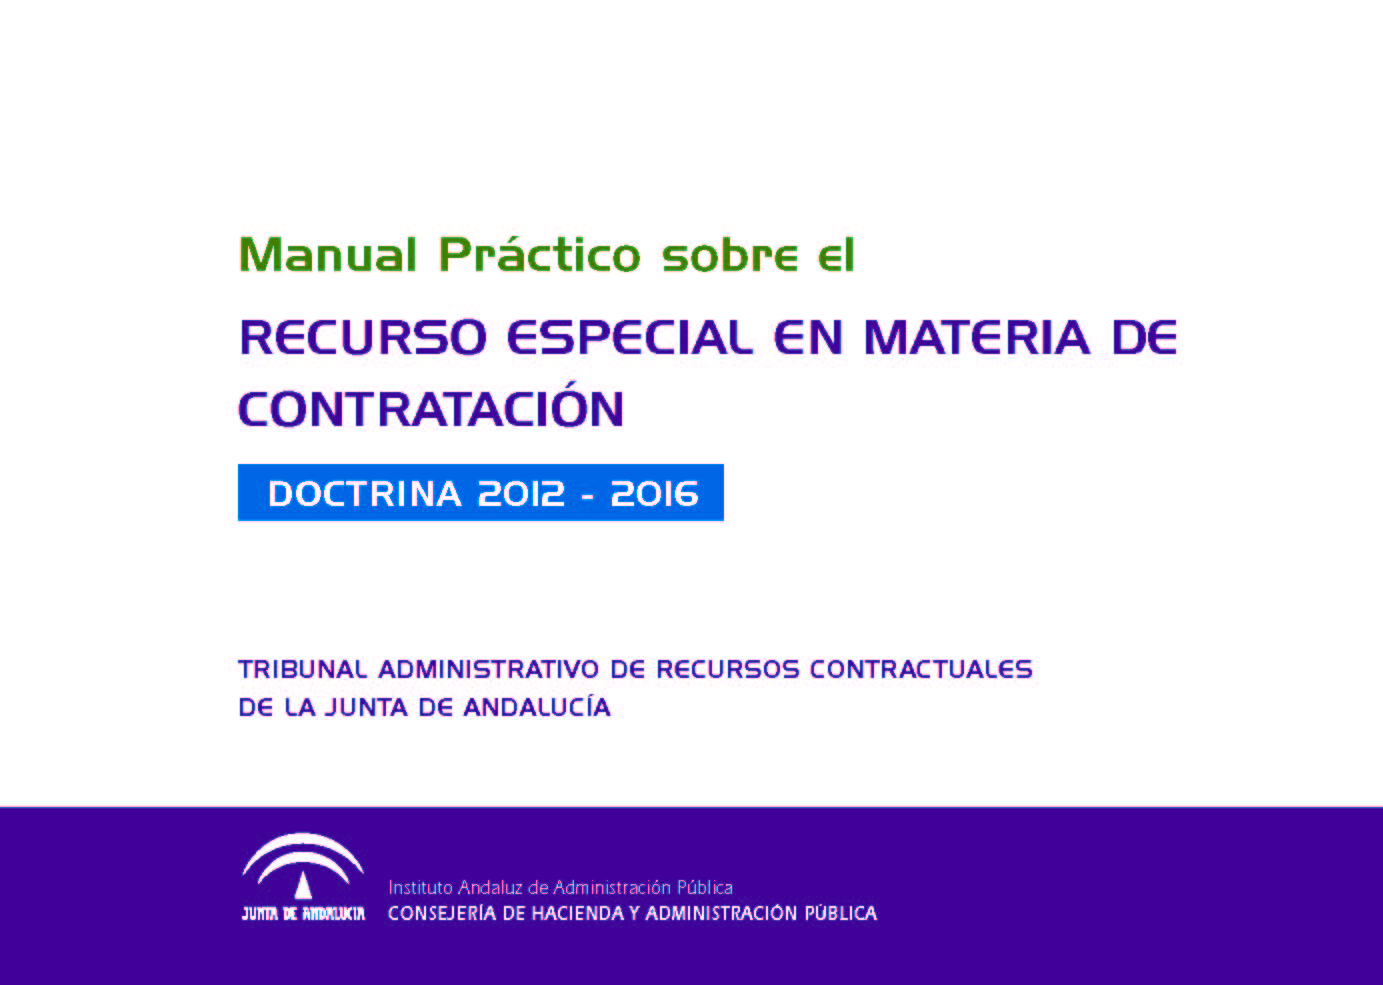 Manual práctico sobre el recurso especial en materia de contratación